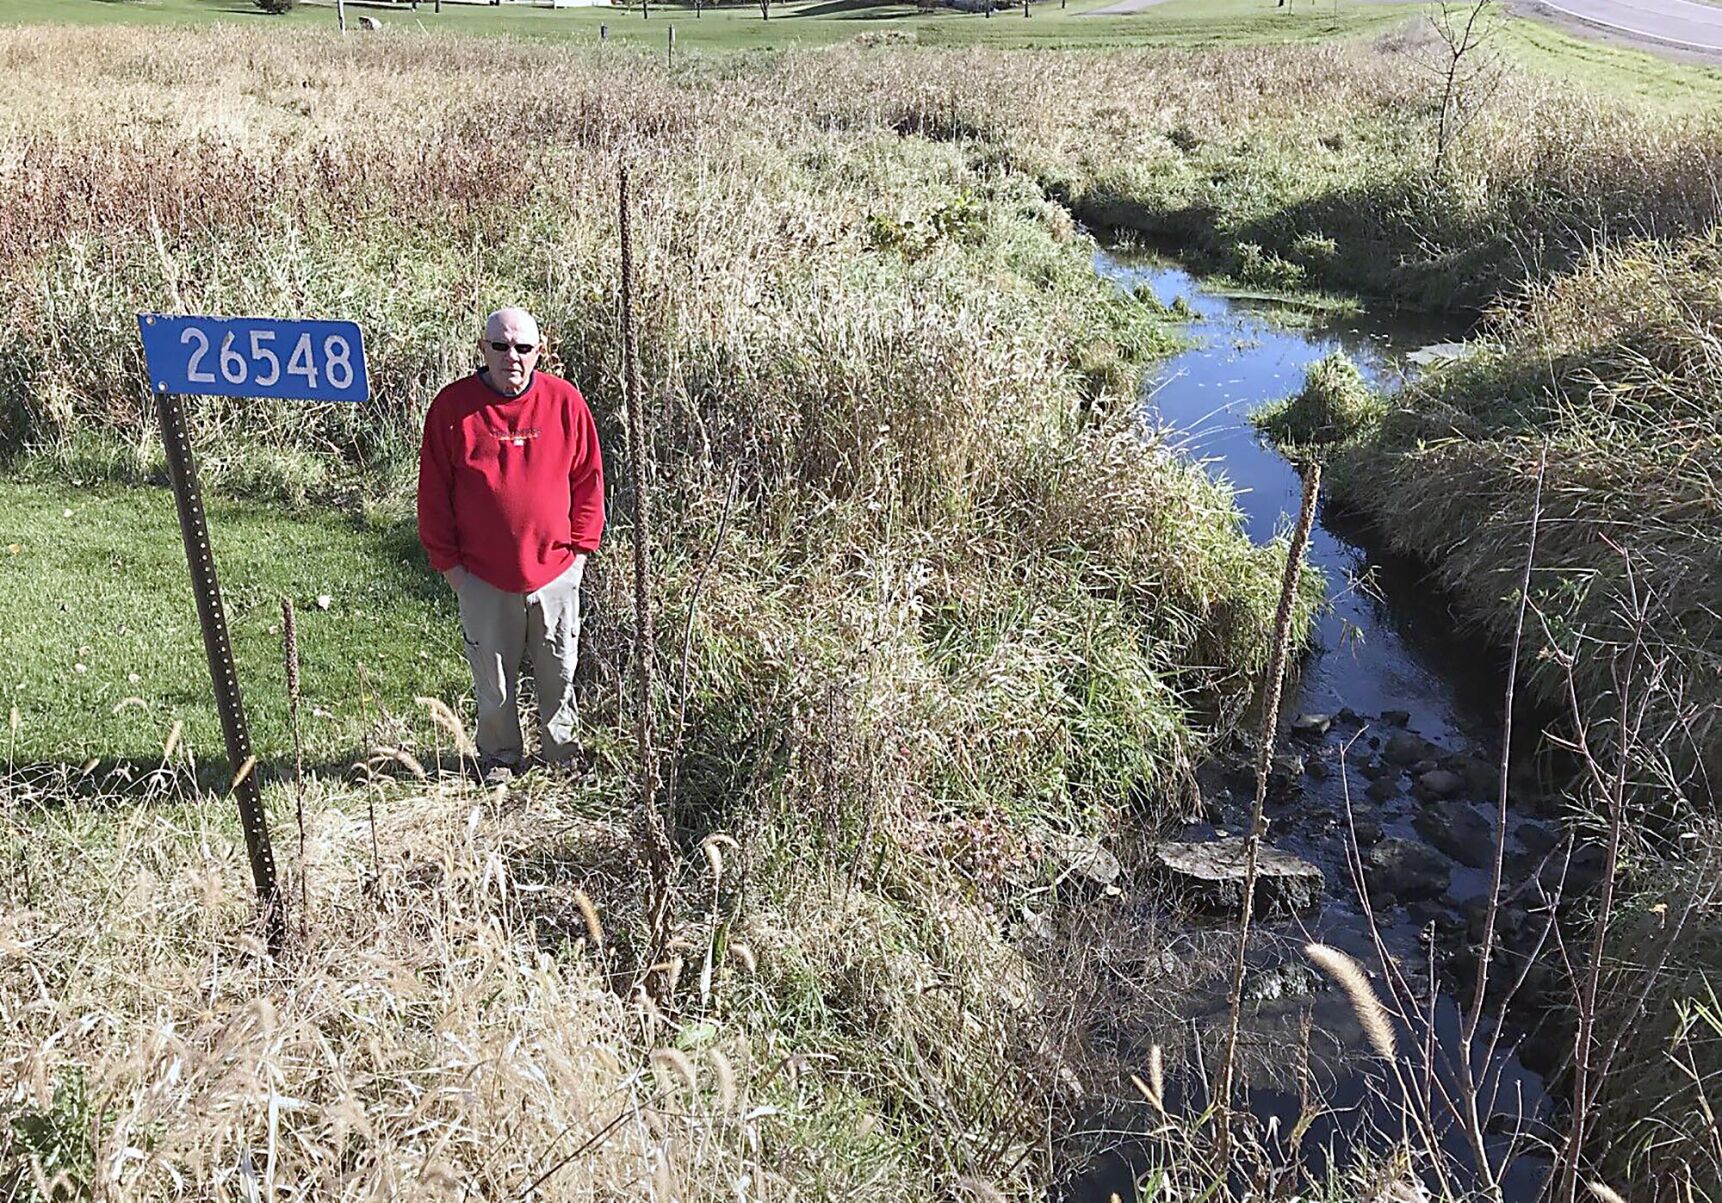 Cleveland area farmer participates in project to restore wetland Local News mankatofreepress pic